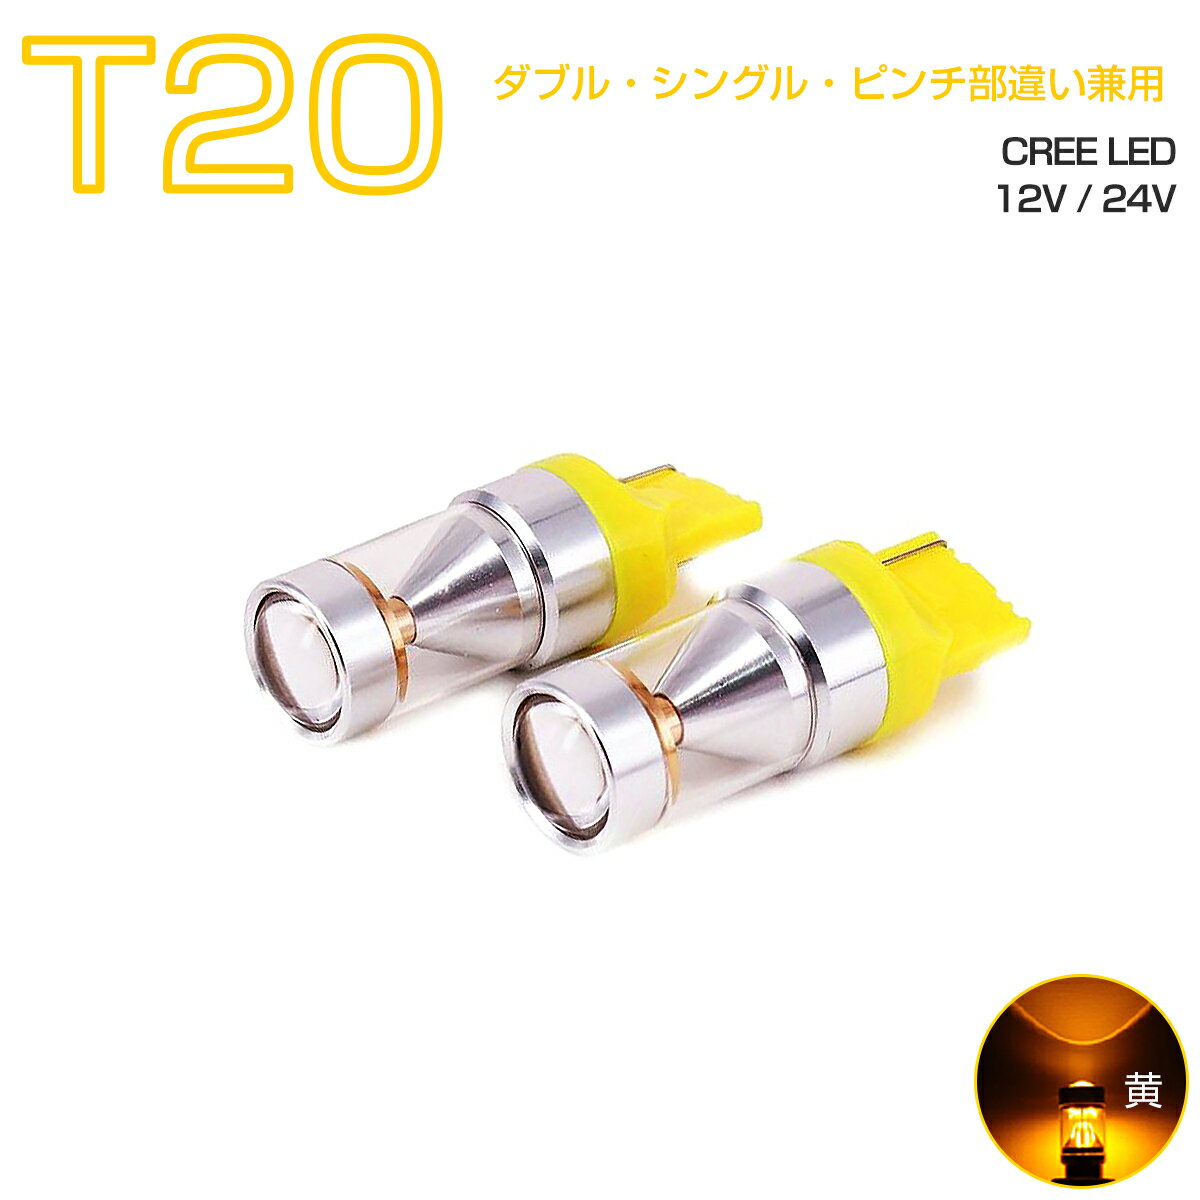 LED T20 アンバー黄発光 30W CREEチップ 